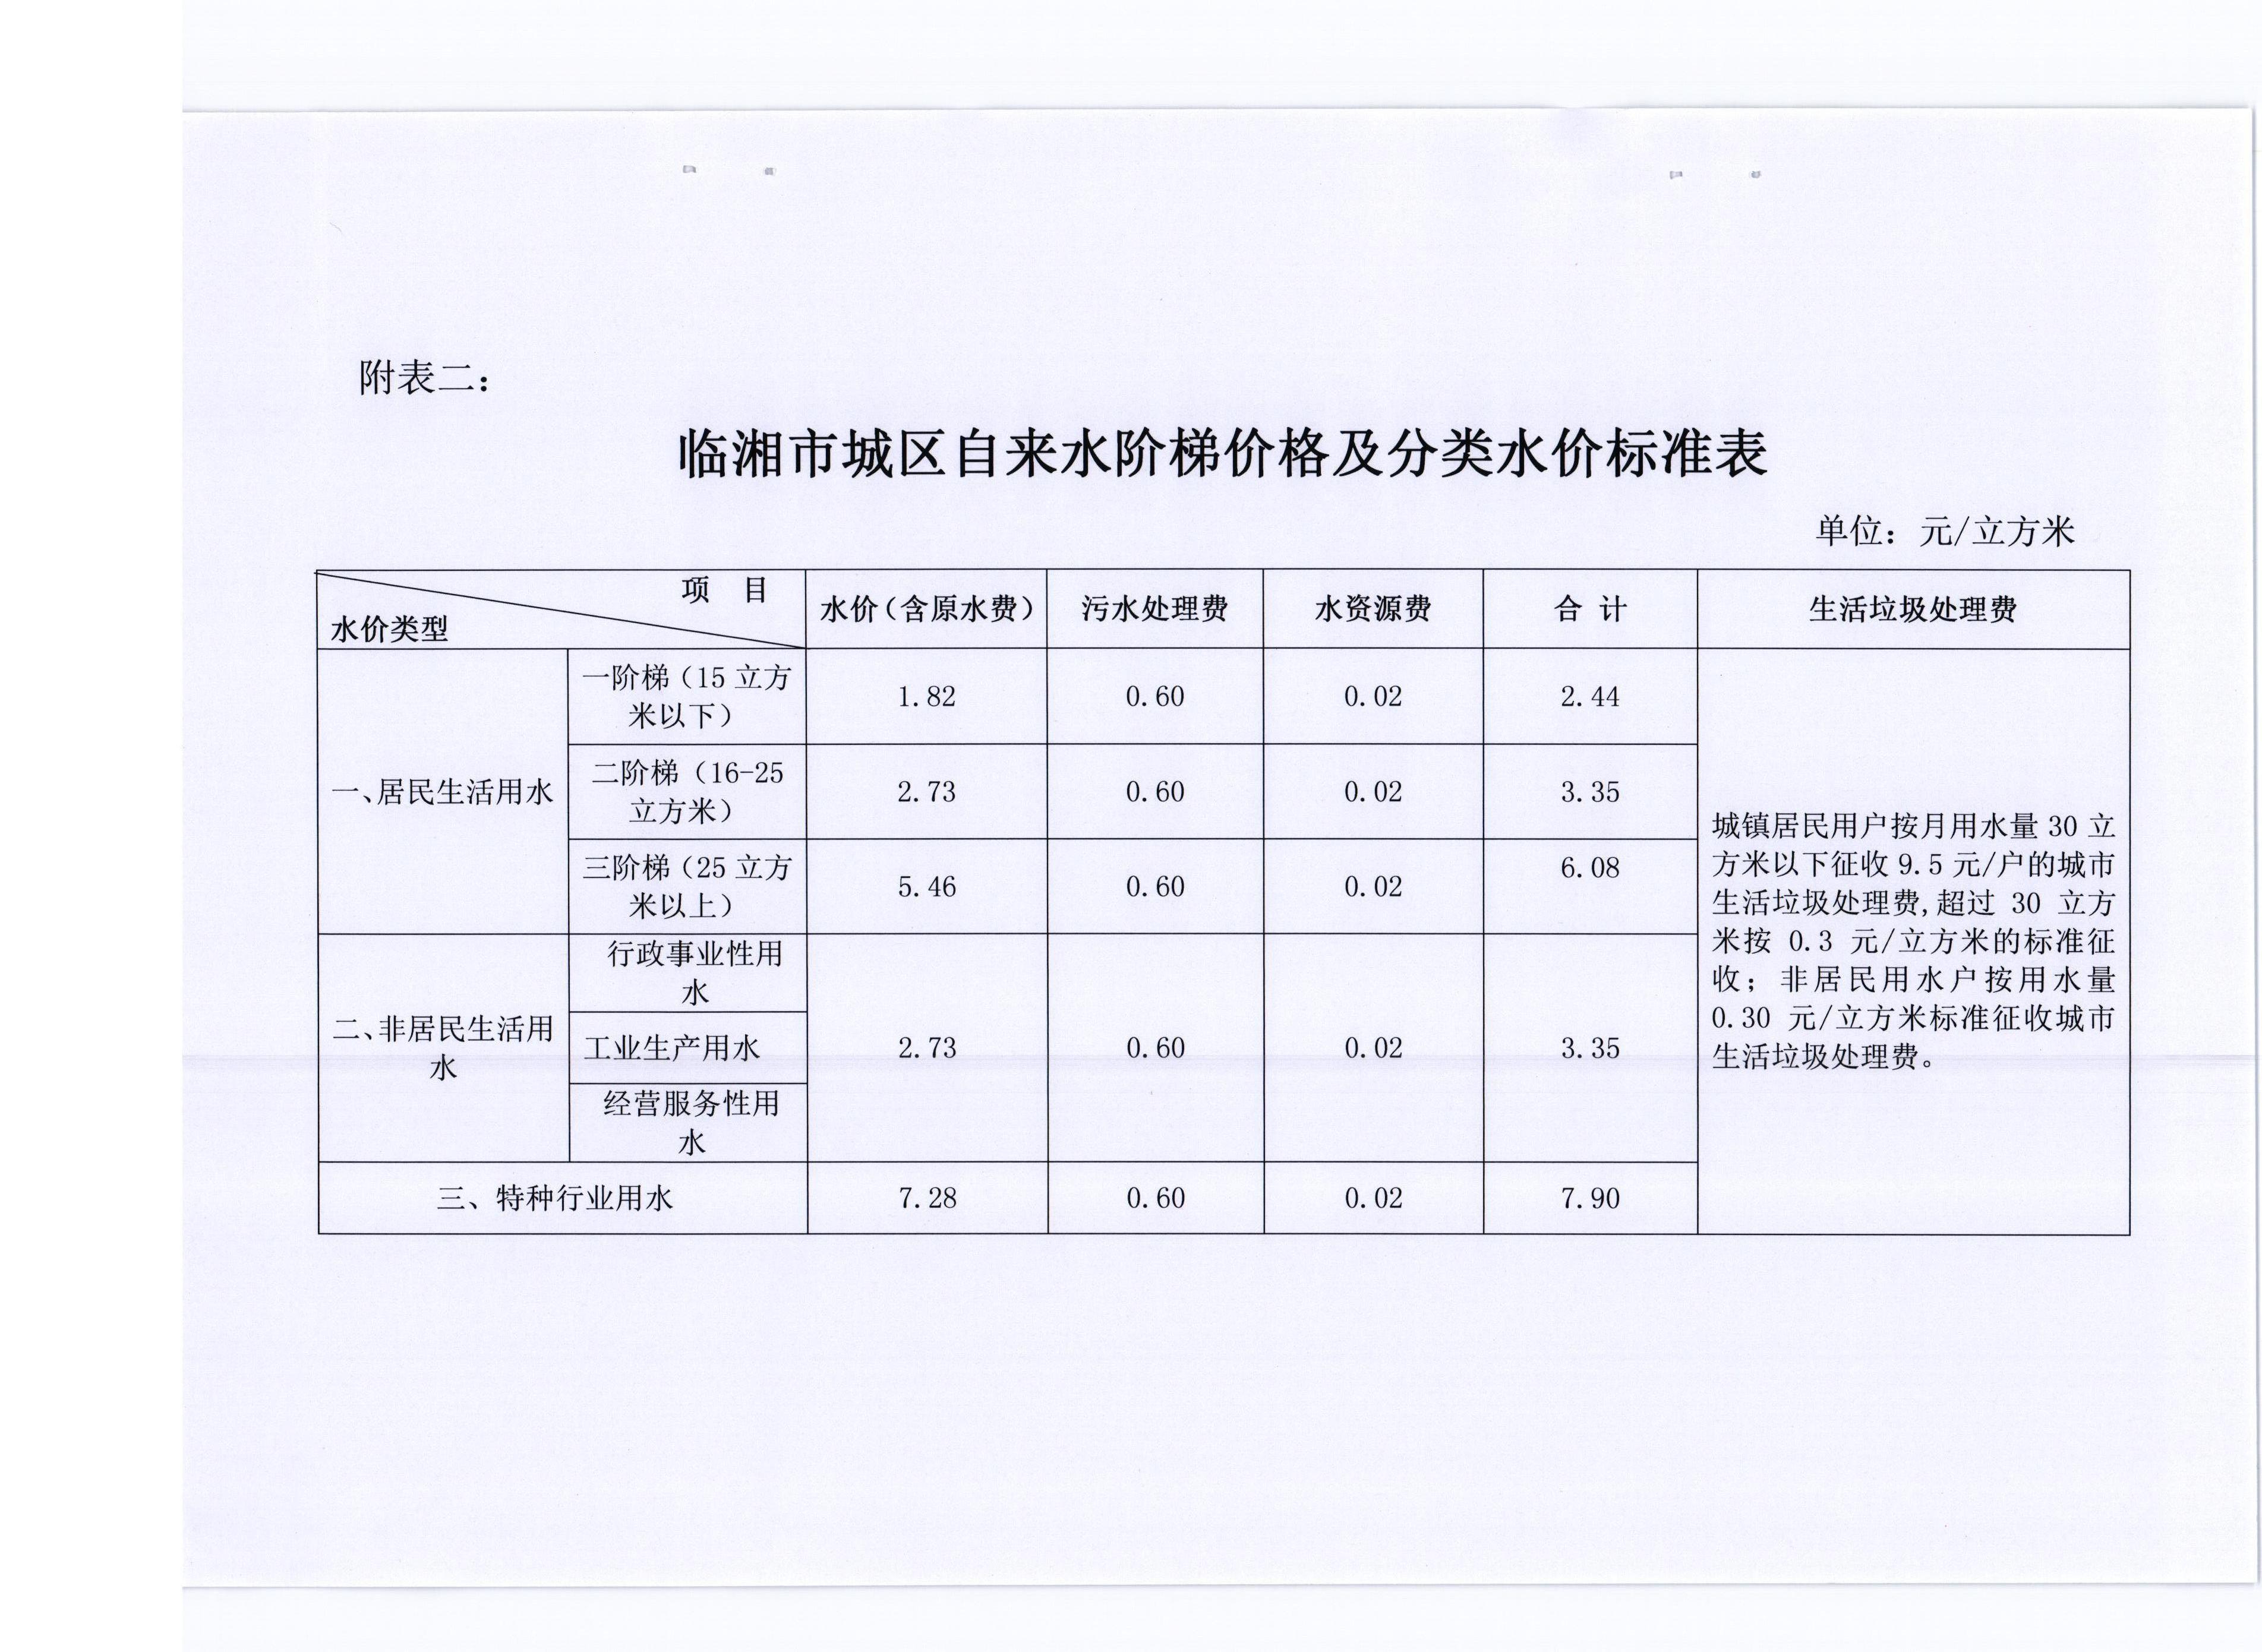 政务公开 文件通告 公示公告    附表二:临湘市城区自来水阶梯价格及